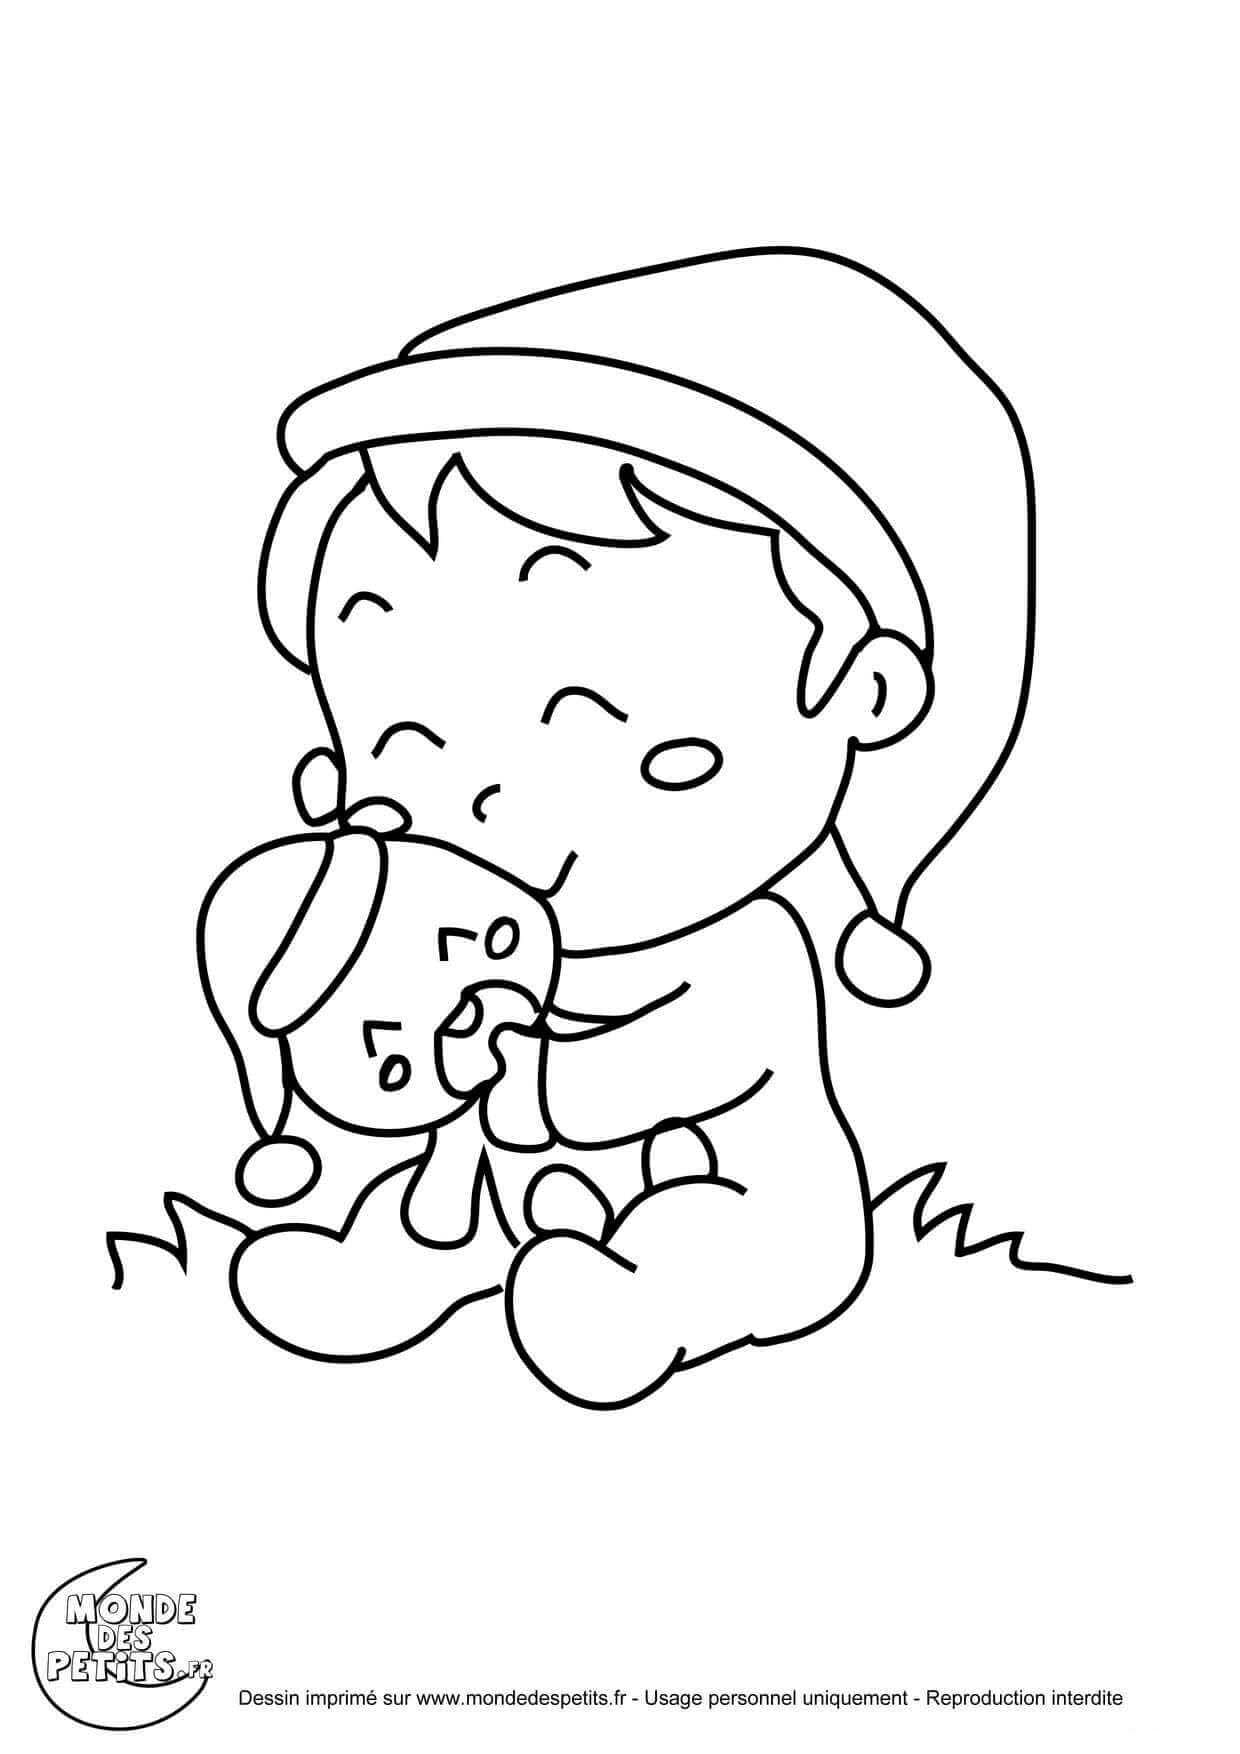 Titounis Bébé coloring page